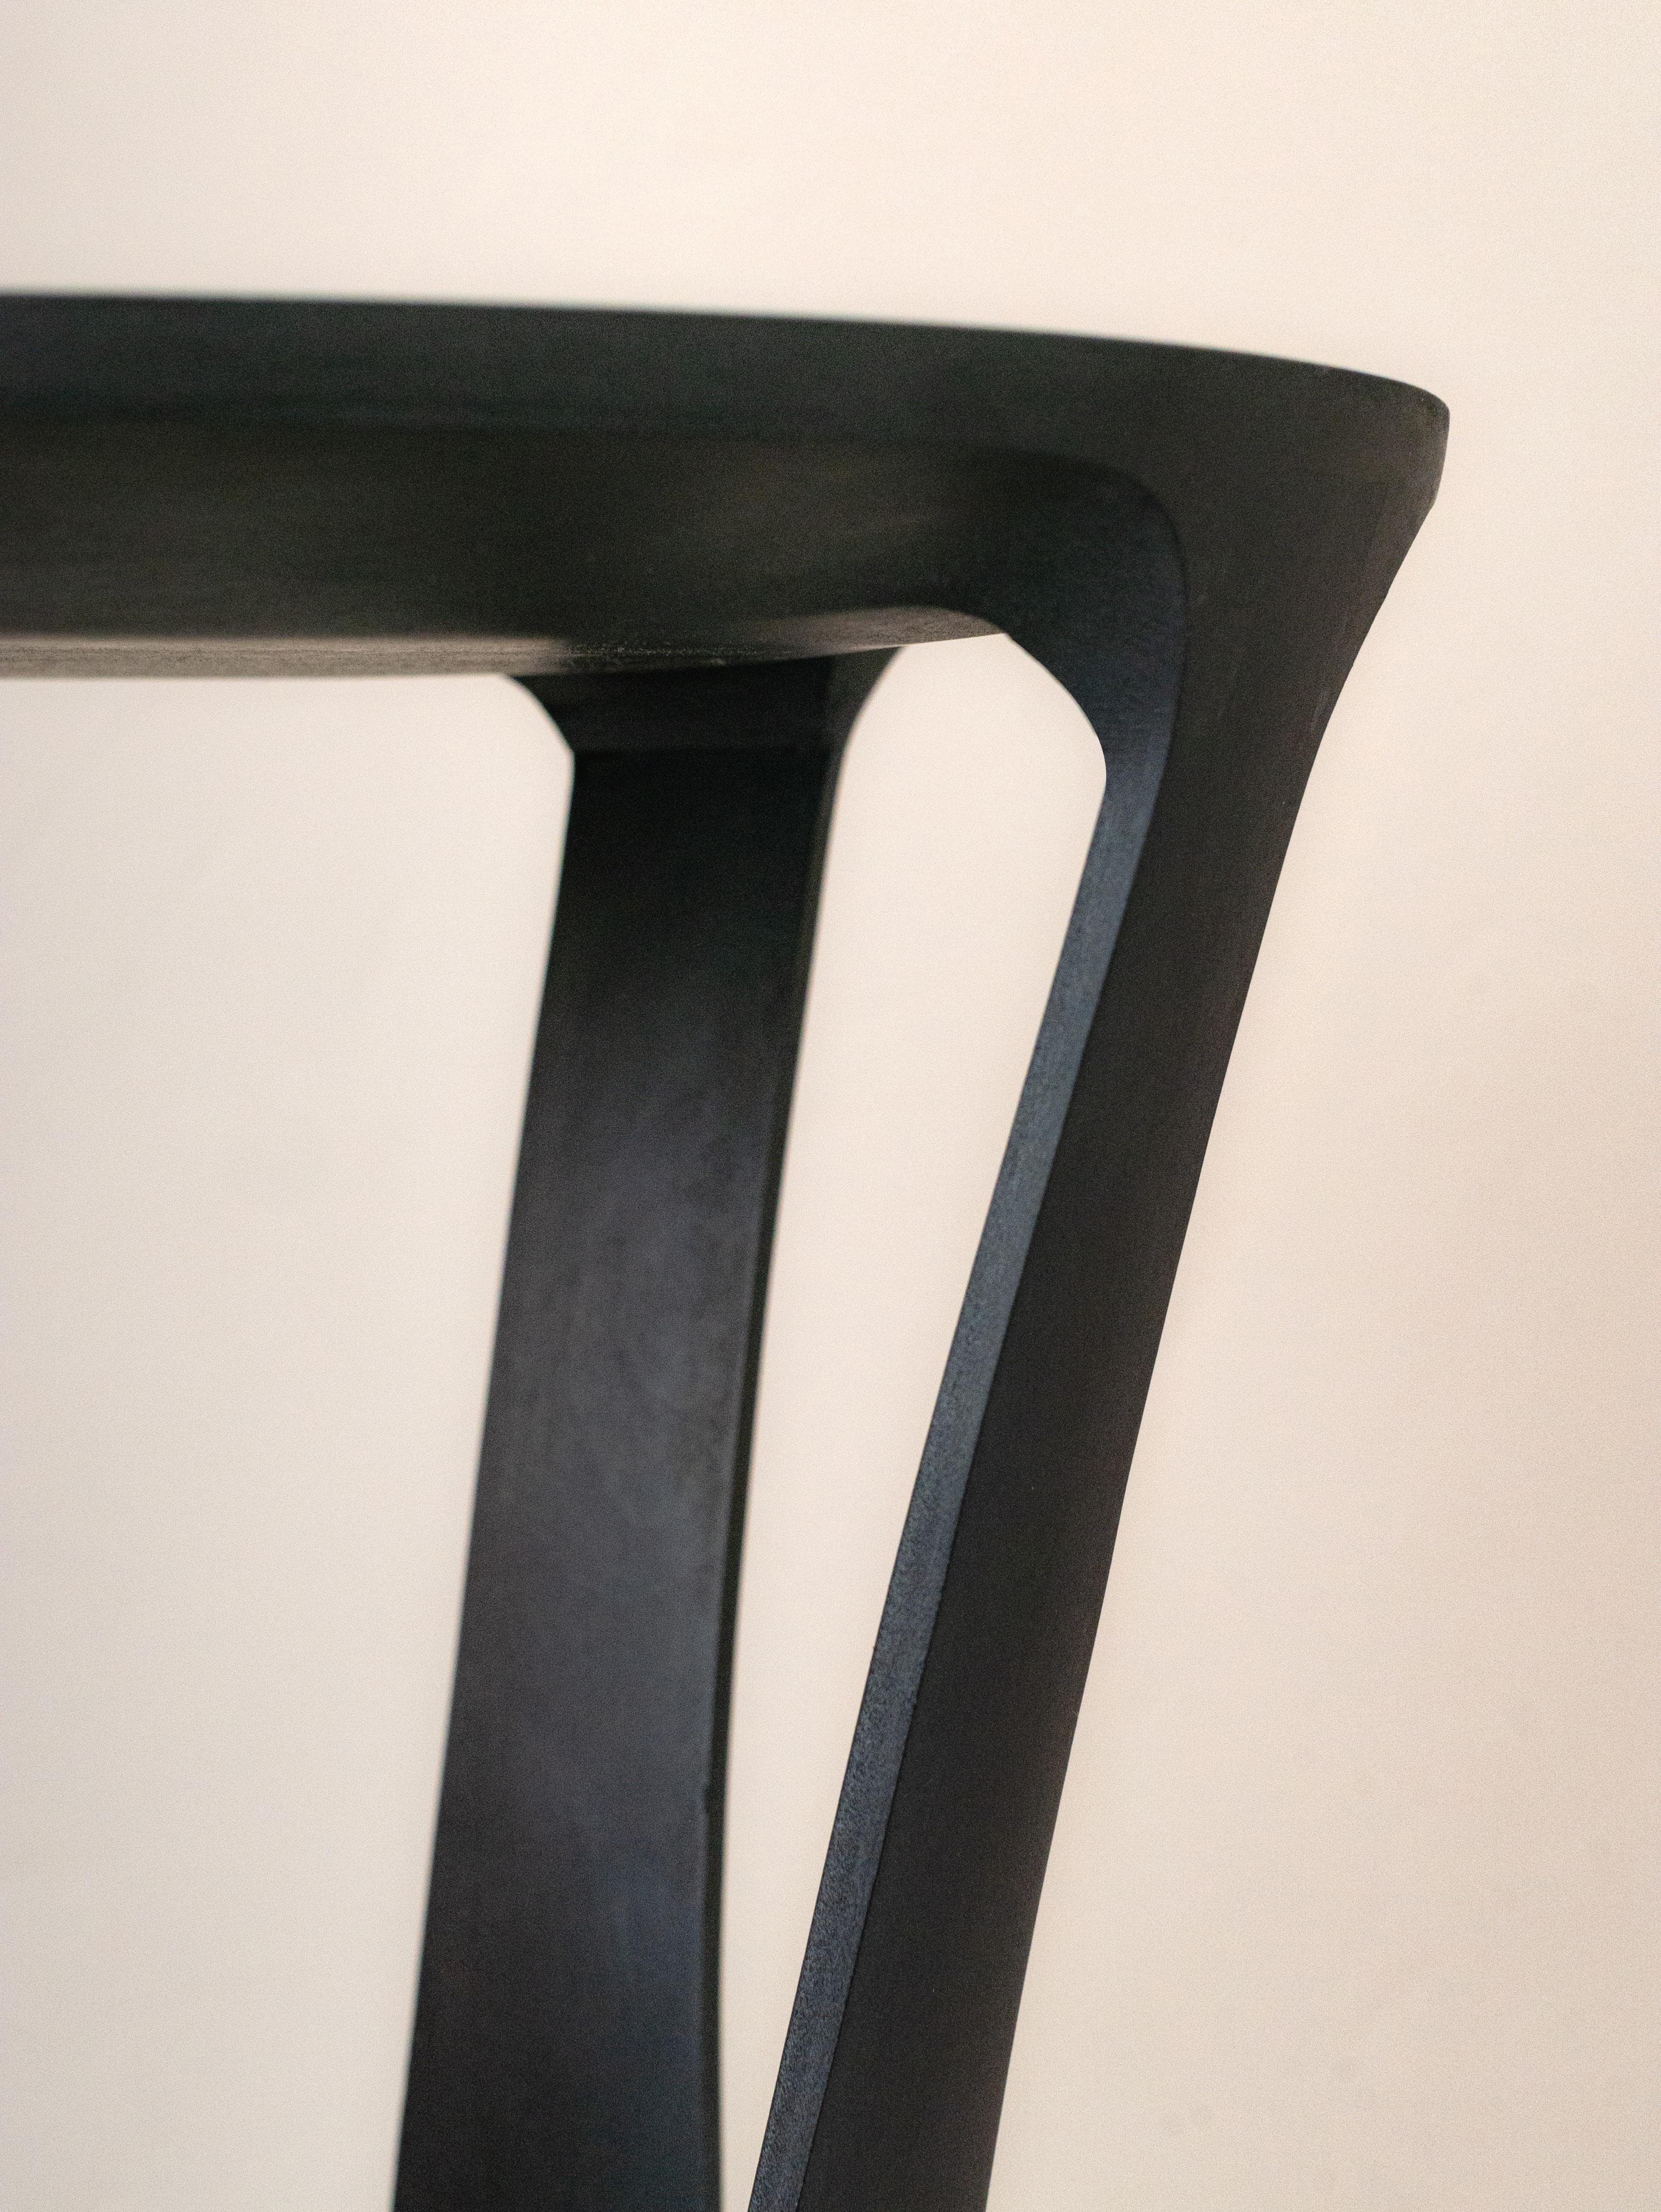 Minimalist Pétiole Pedestal Table  For Sale